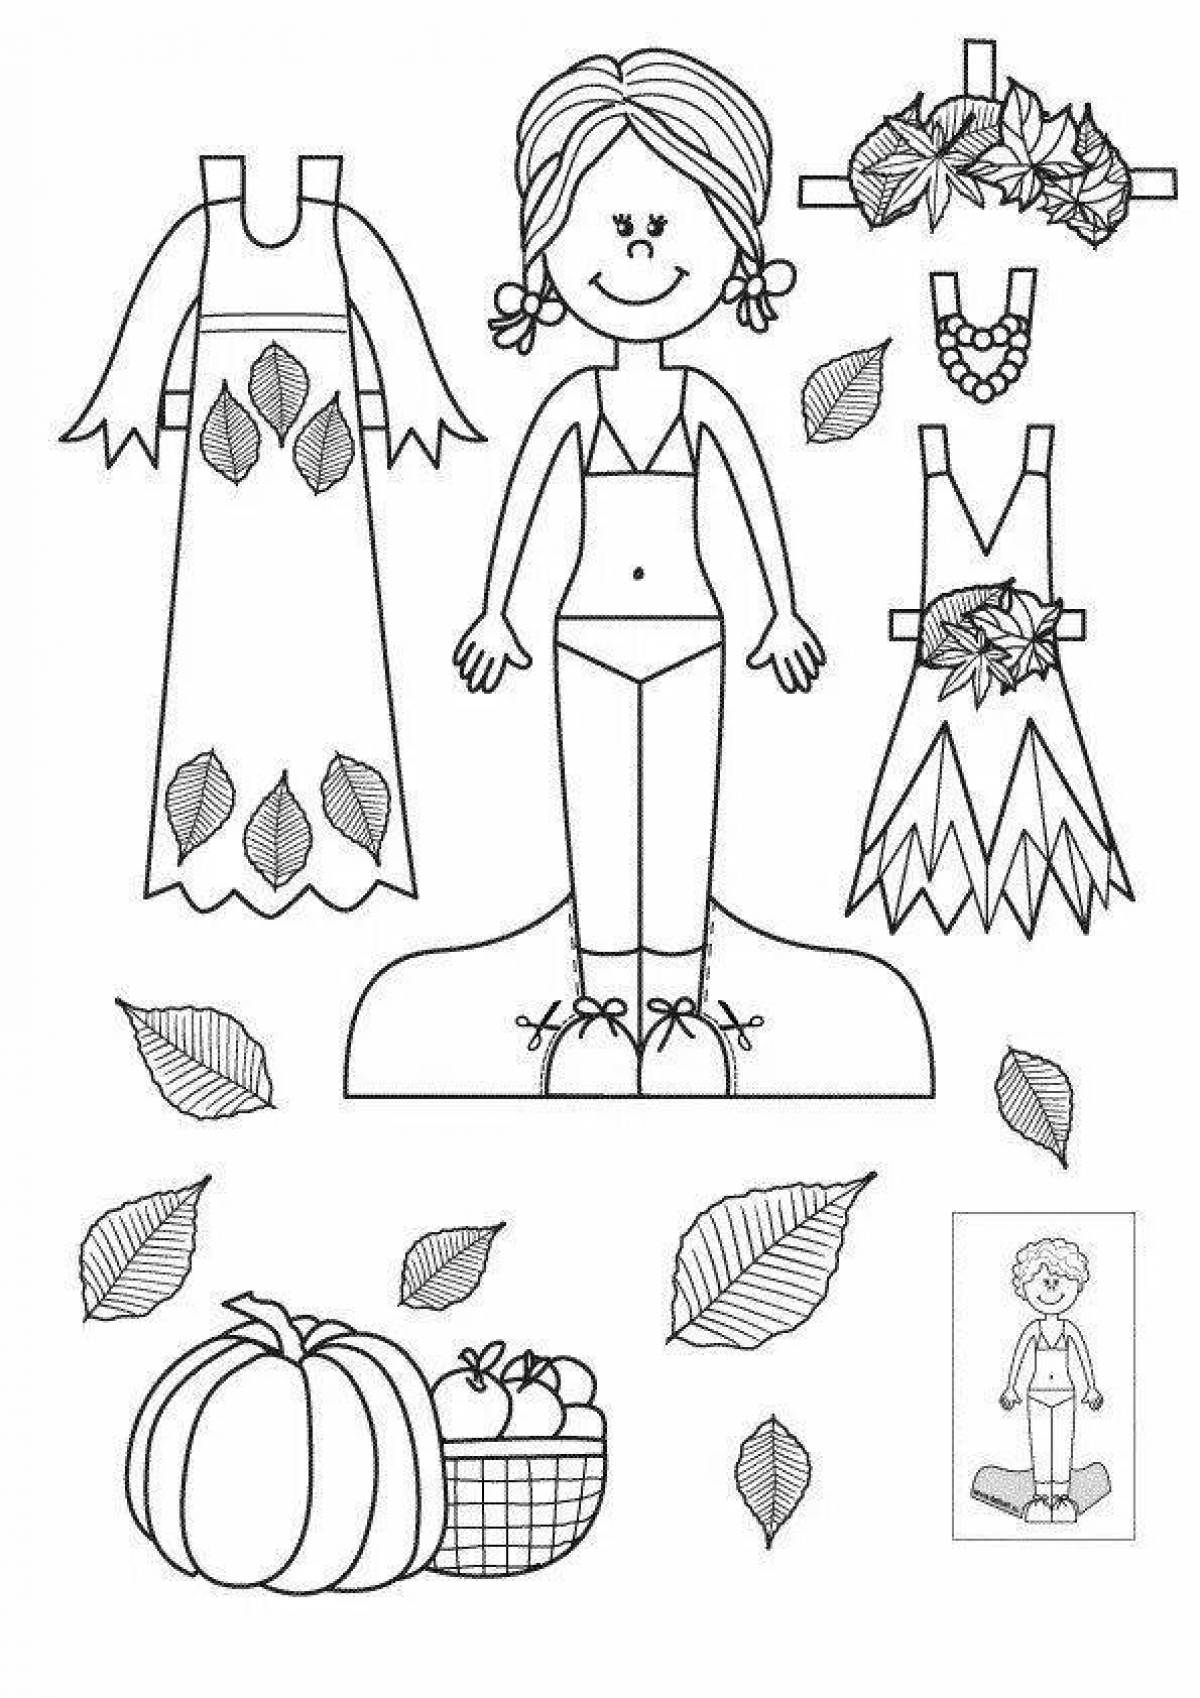 Шаблон куклы для вырезания из бумаги распечатать. Бумажные куклы с одеждой. Бумажная кукла раскраска. Раскраска кукла с одеждой. Кукла вырезалка раскраска.